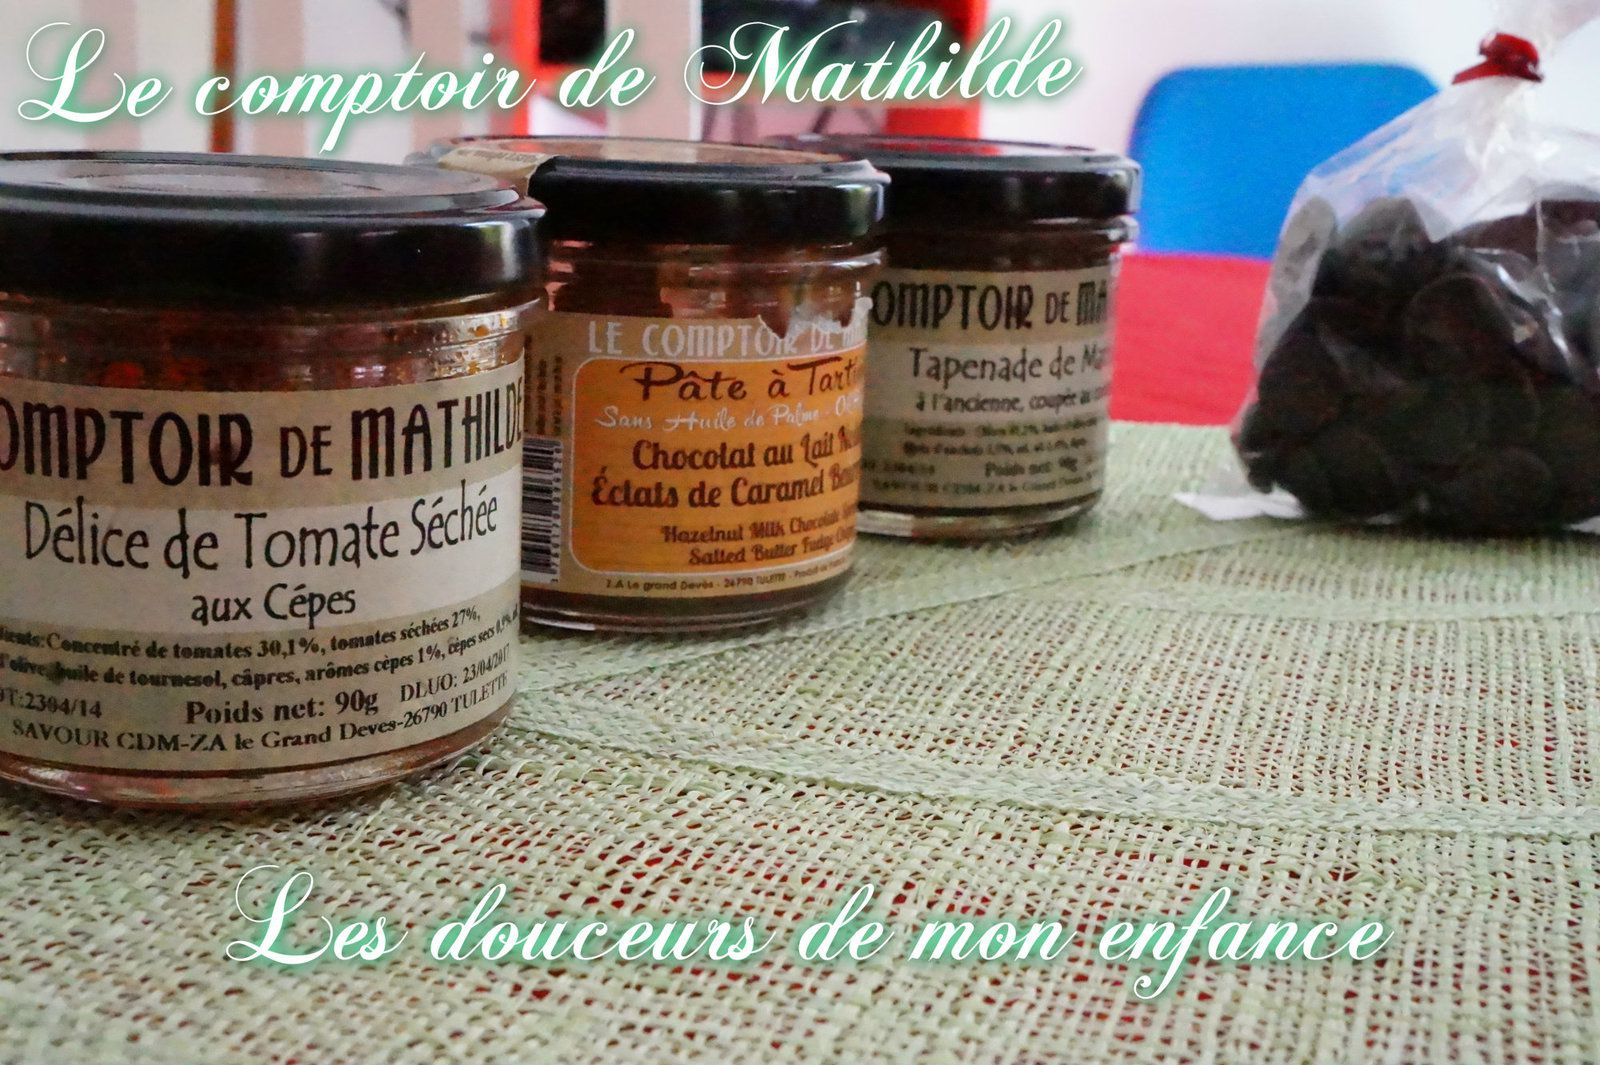 Le comptoire de Mathilde les Coeurs sablés chocolat lait de noisette